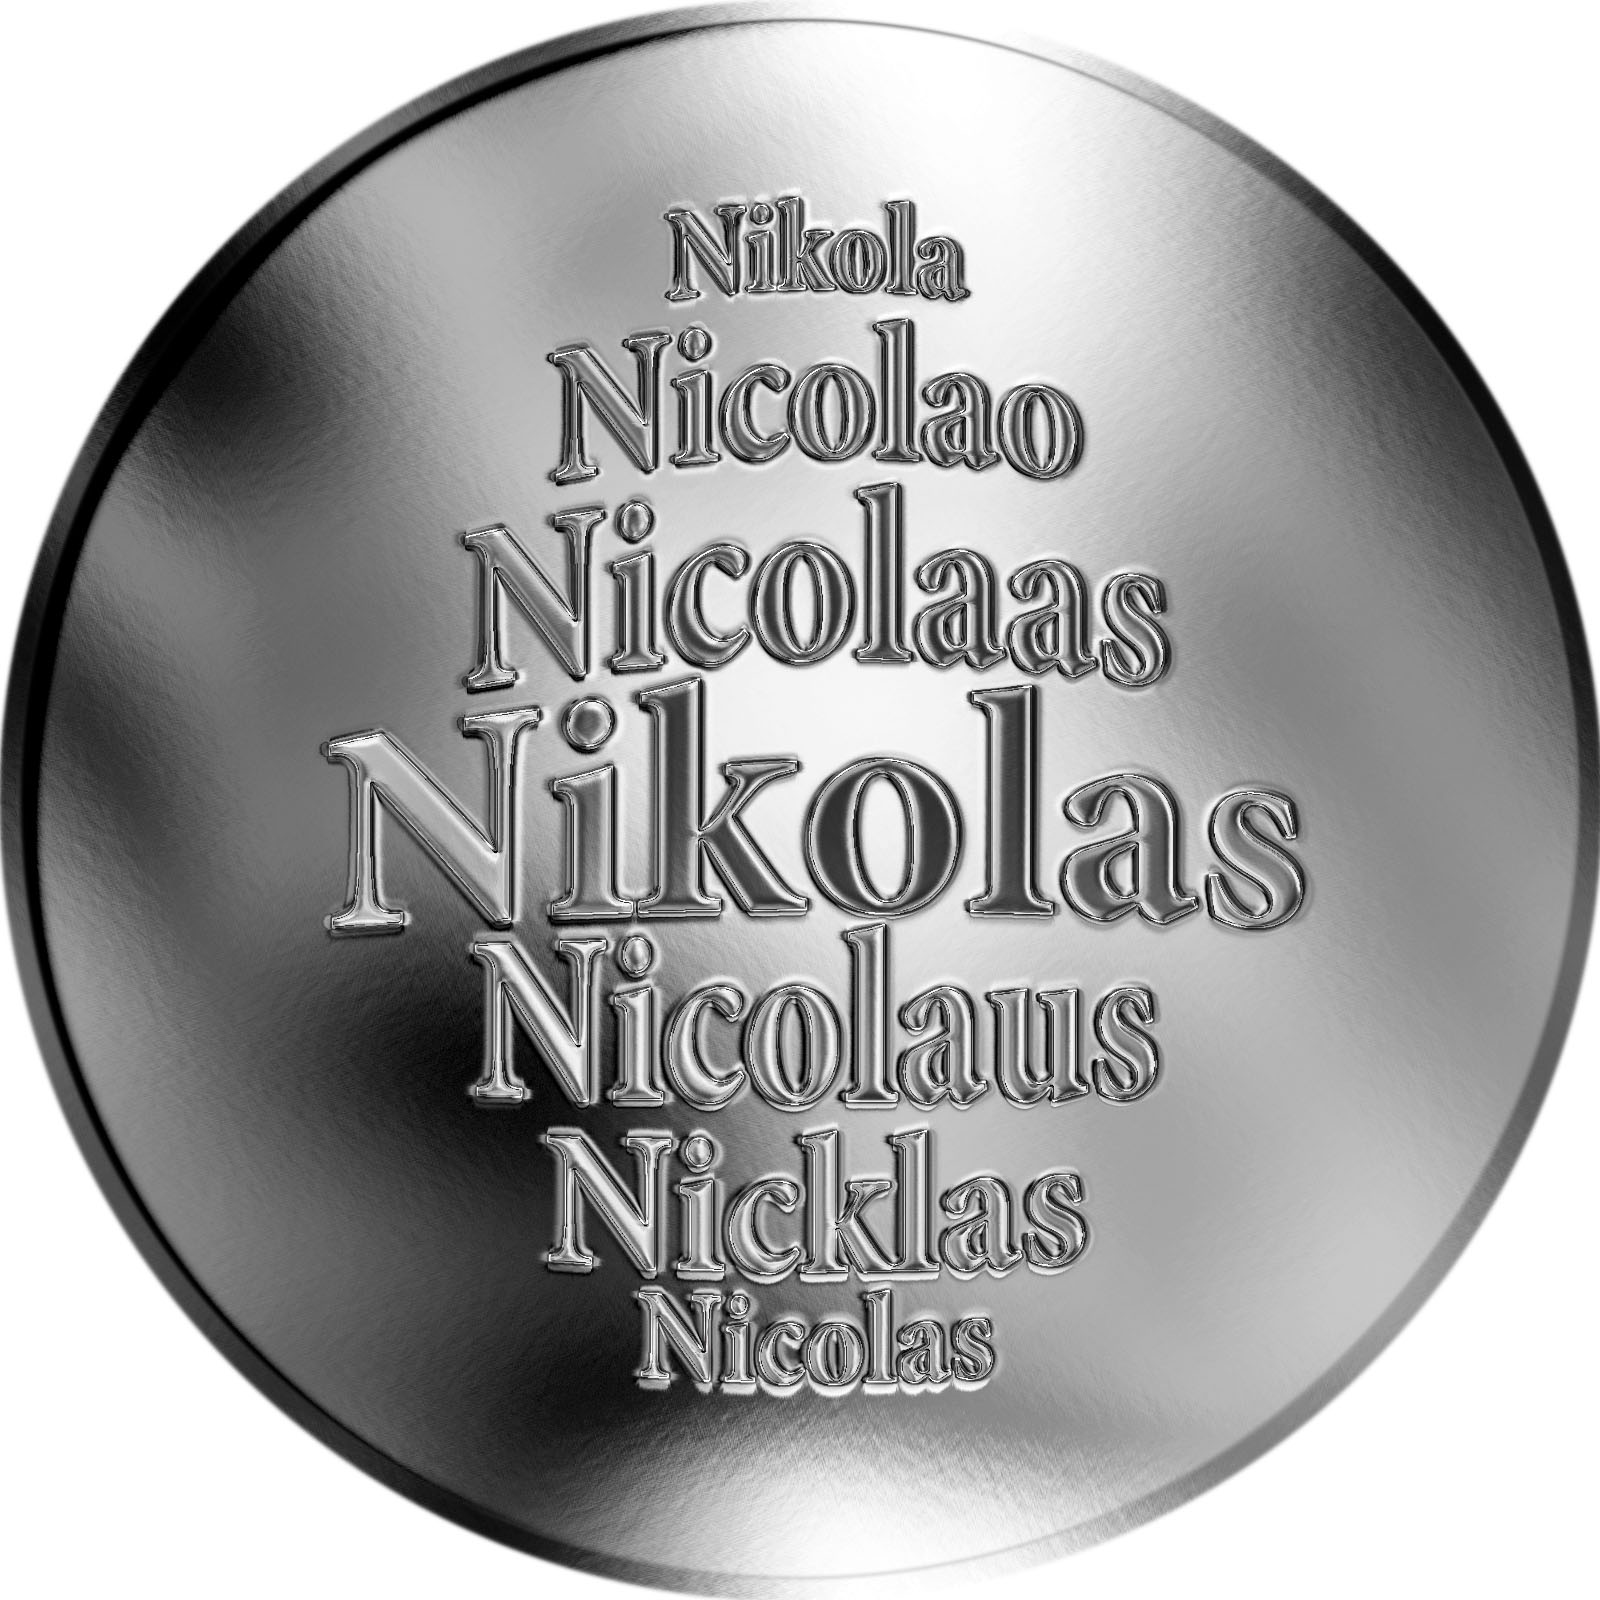 Co to znamená Nikolas?